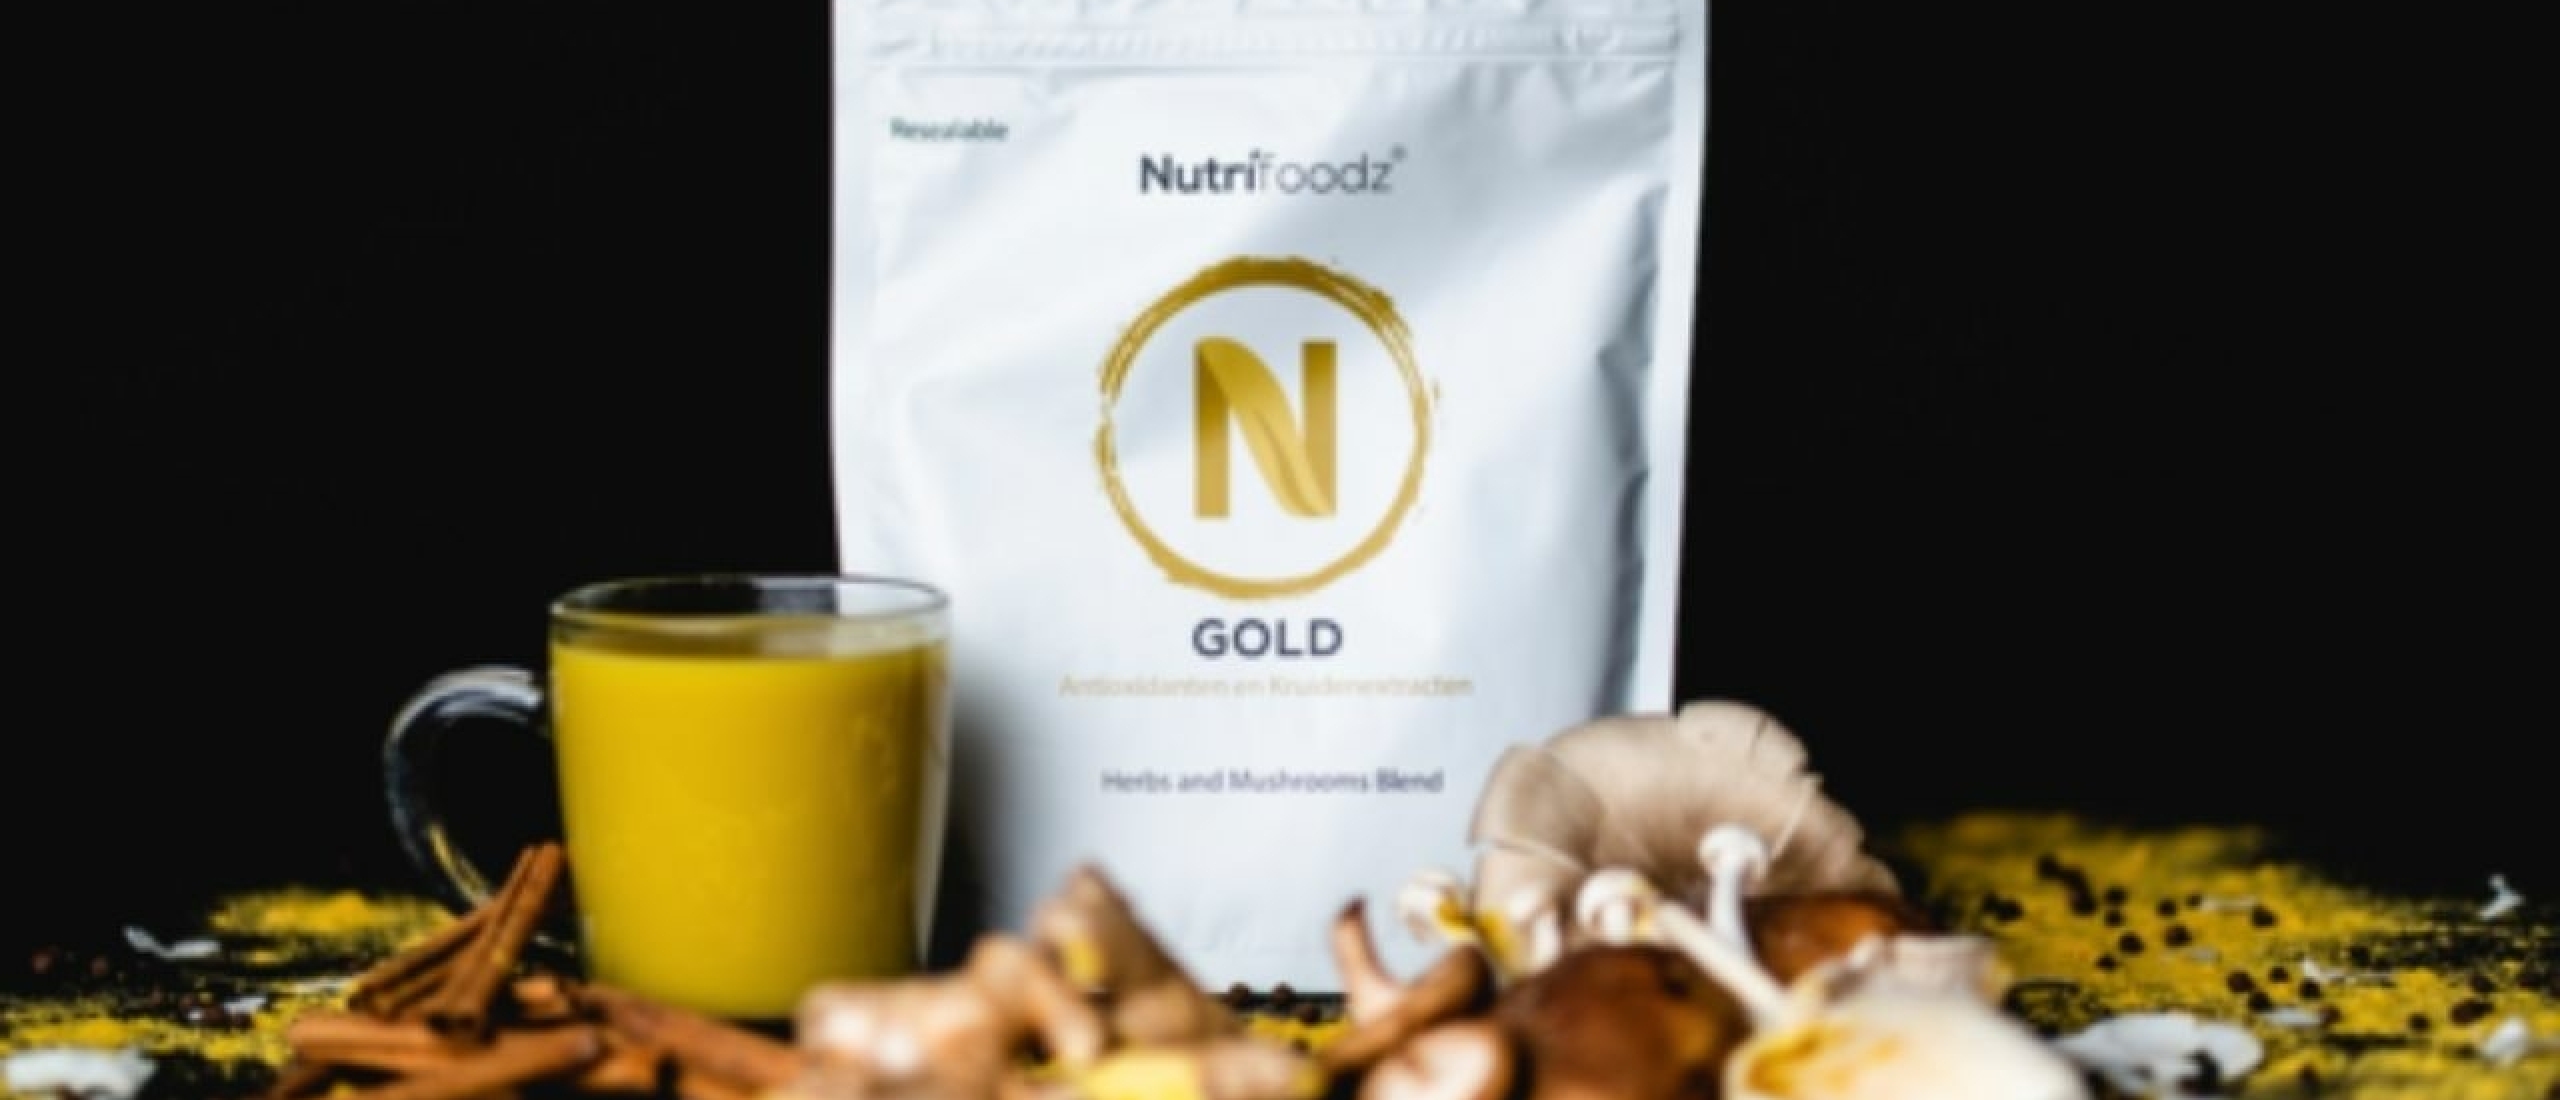 Werkt Nutrifoodz Gold echt voor een betere nachtrust?